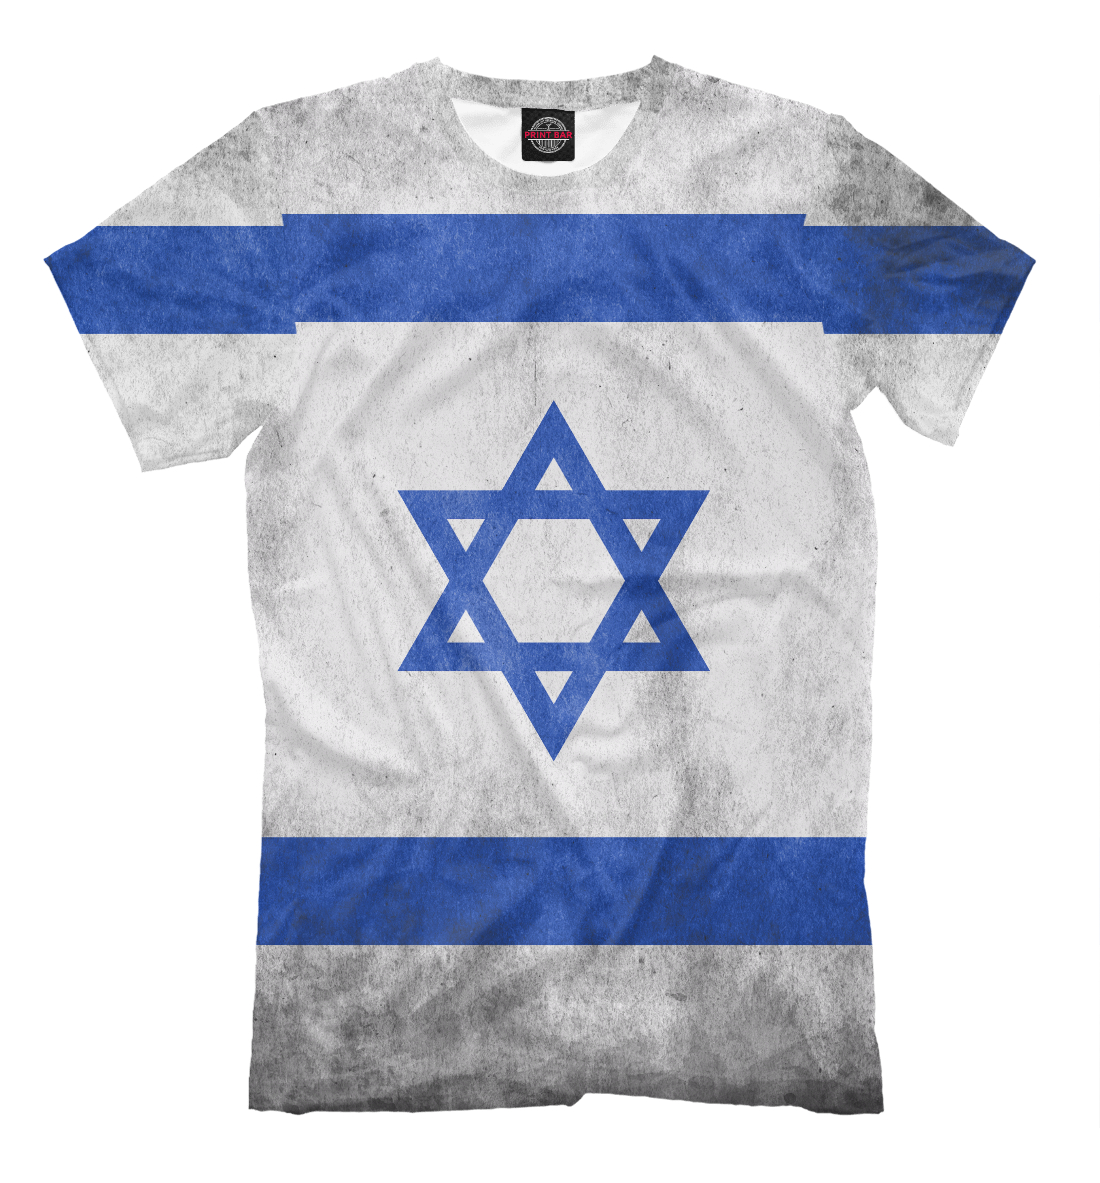 Флаг майка. Футболка с флагом. Футболка Israel. Футболка с флагом Израиля. Футболка сборной Израиля.